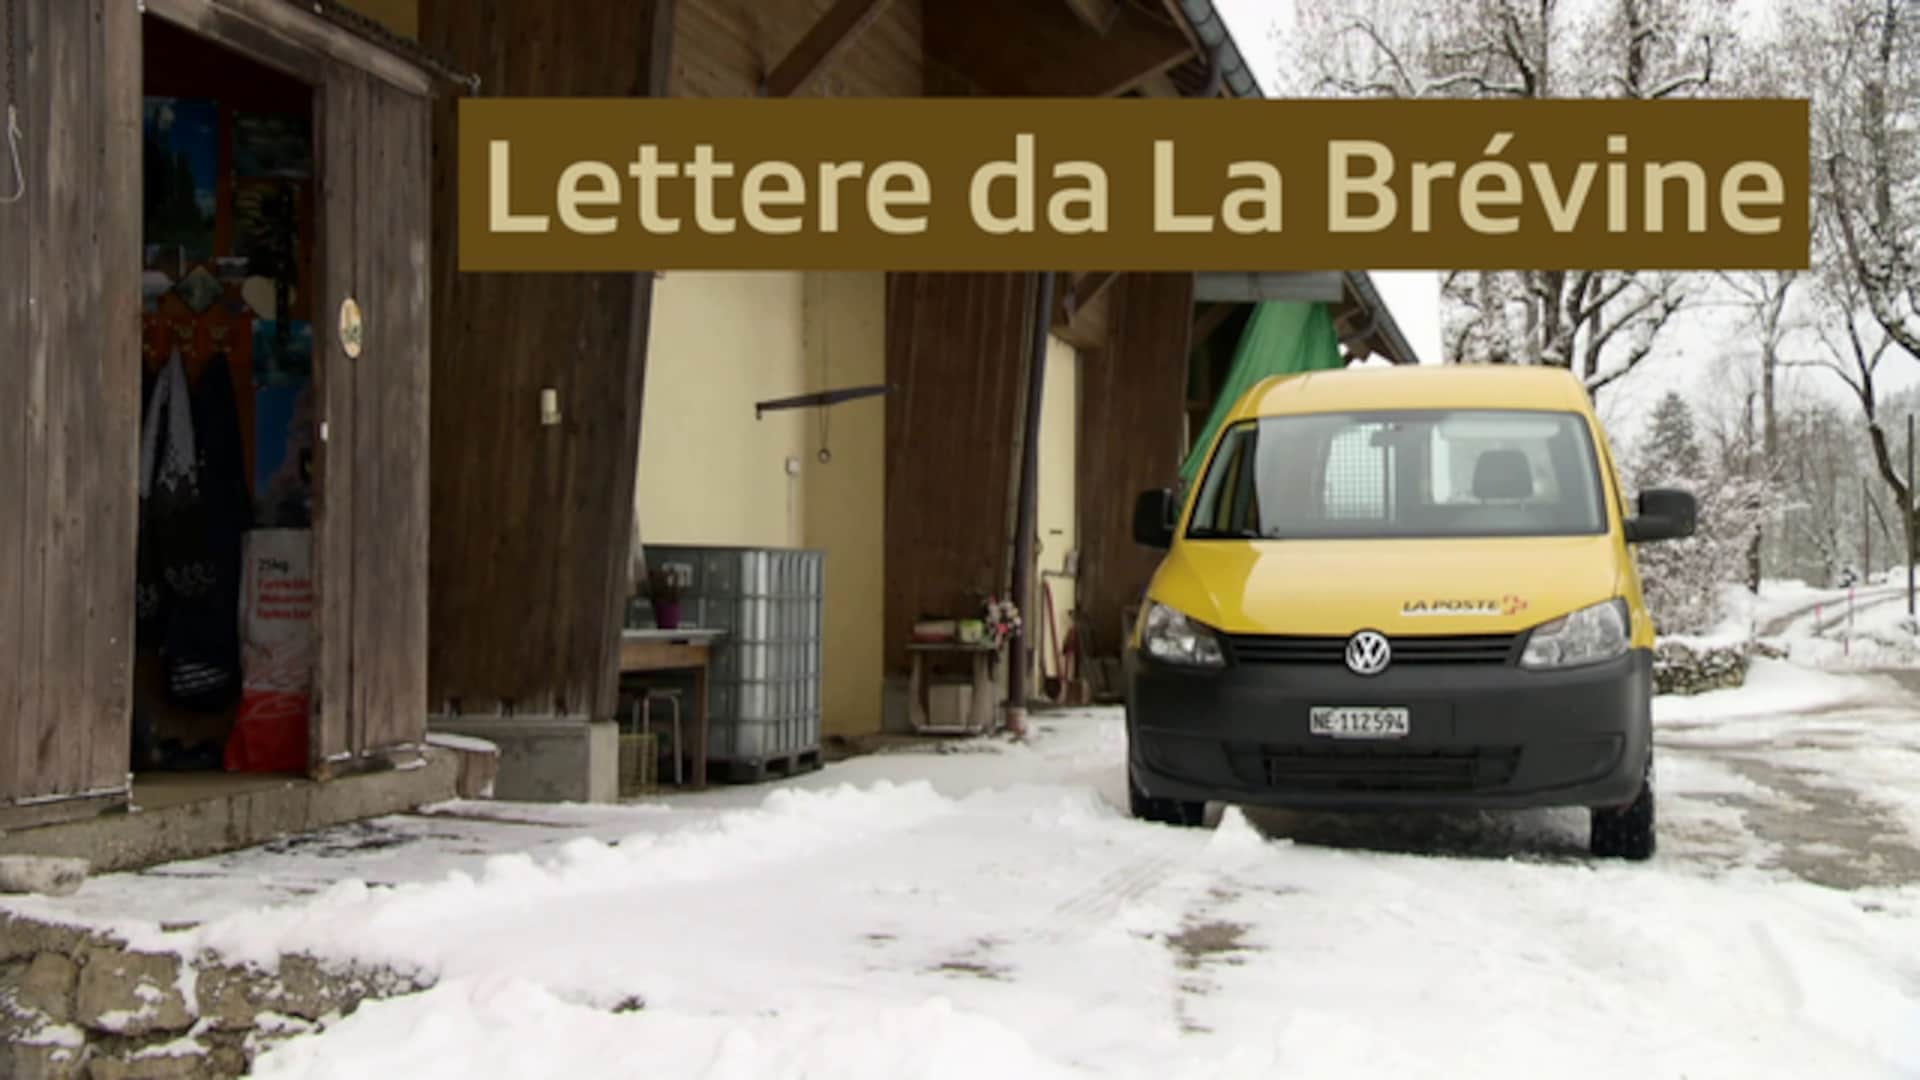 Lettere da La Brévine